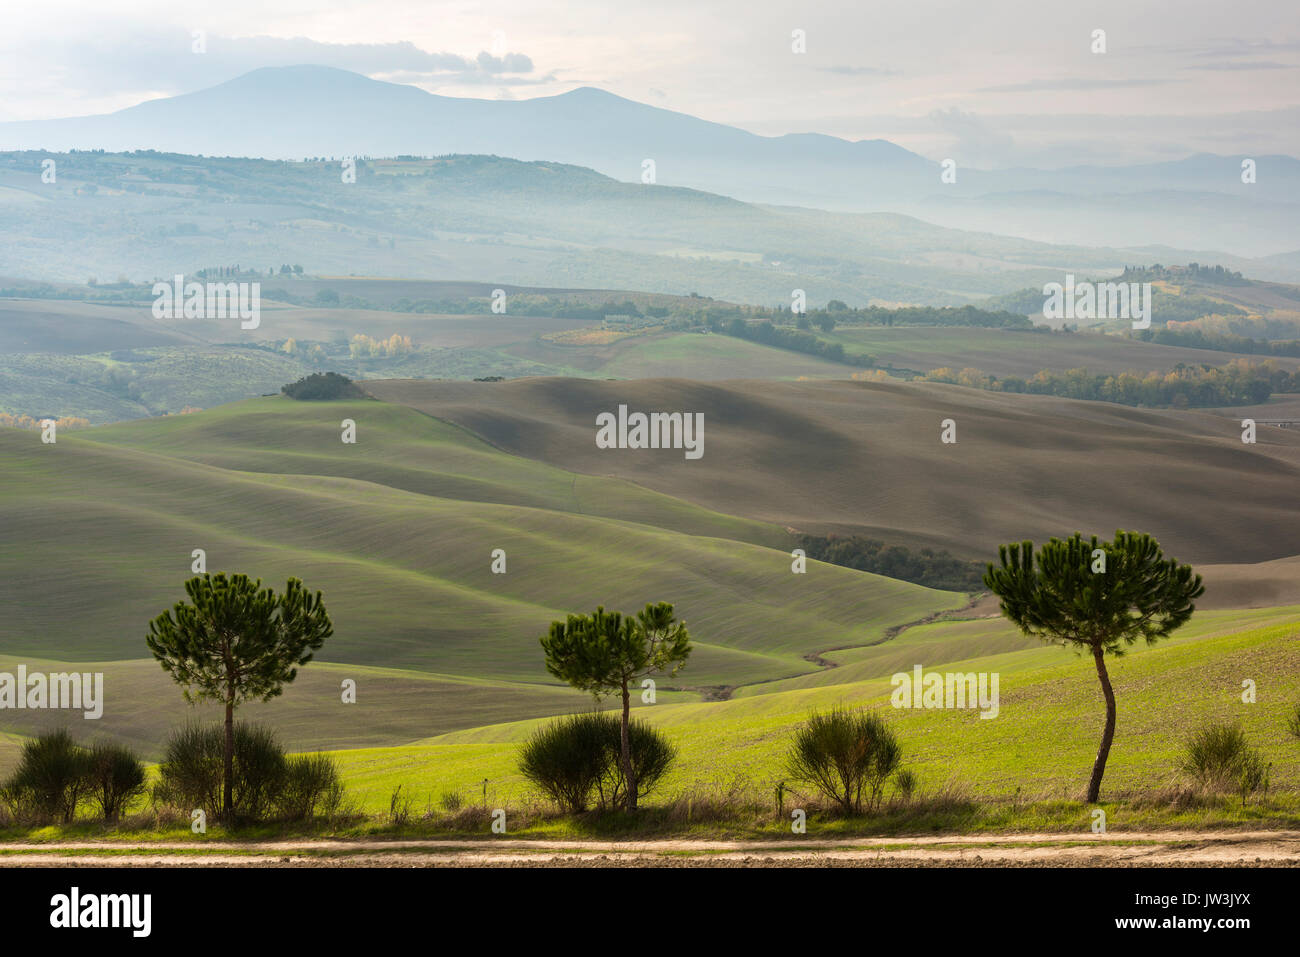 Trois arbres verts et des différentes couches de vert et de gris Toscane hills de disparaître dans la brume Banque D'Images